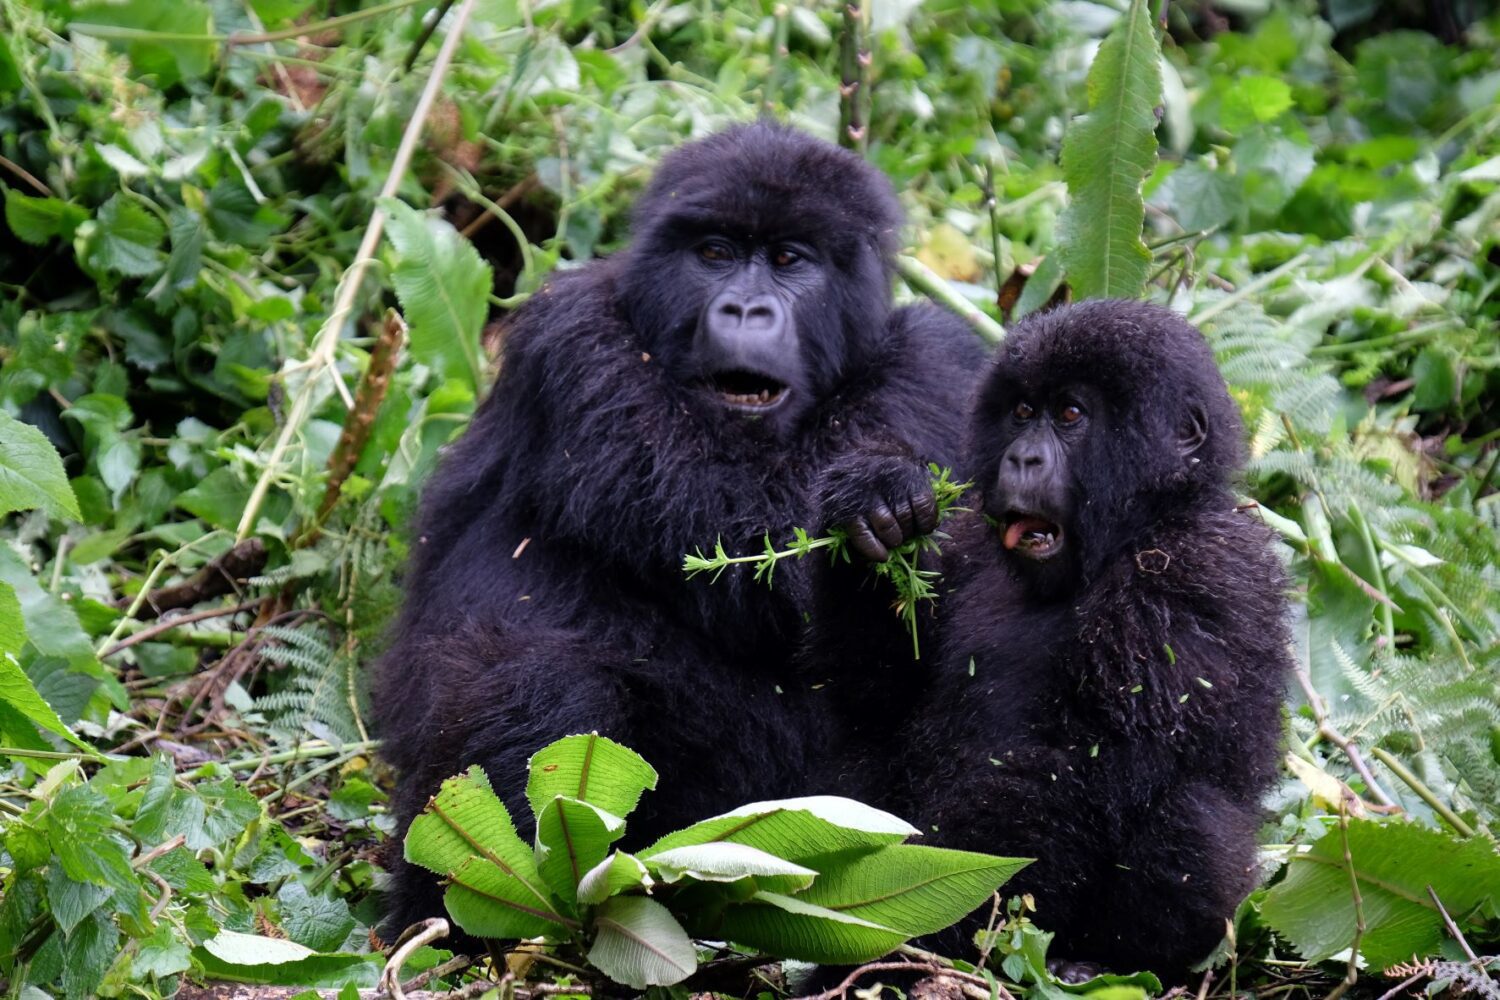 Rwanda Gorillas Uganda - Intrepid Travel